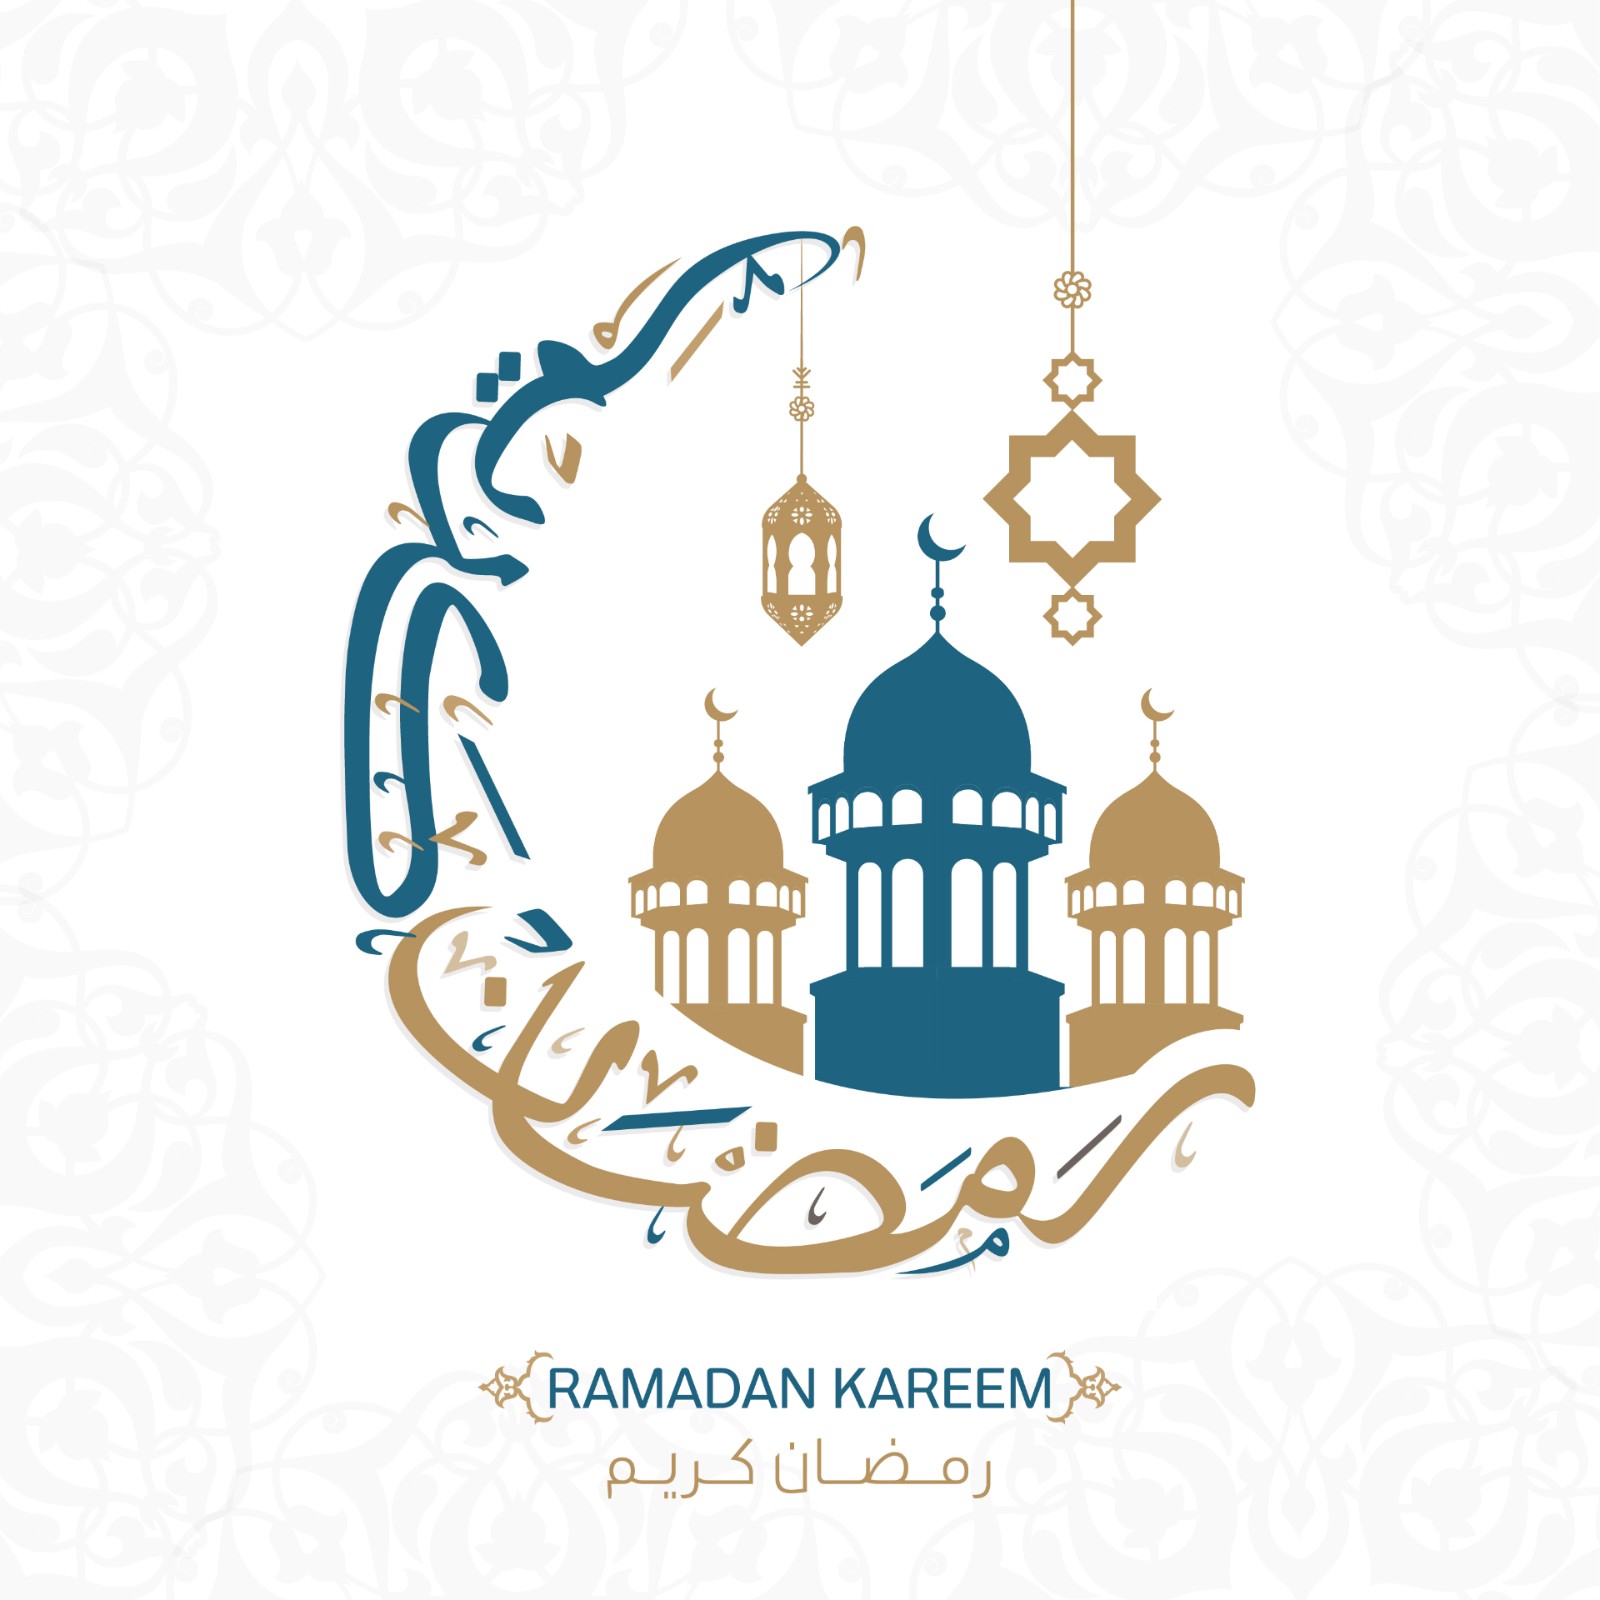 إمساكية رمضان 2021 مصر-مرسى مطروح